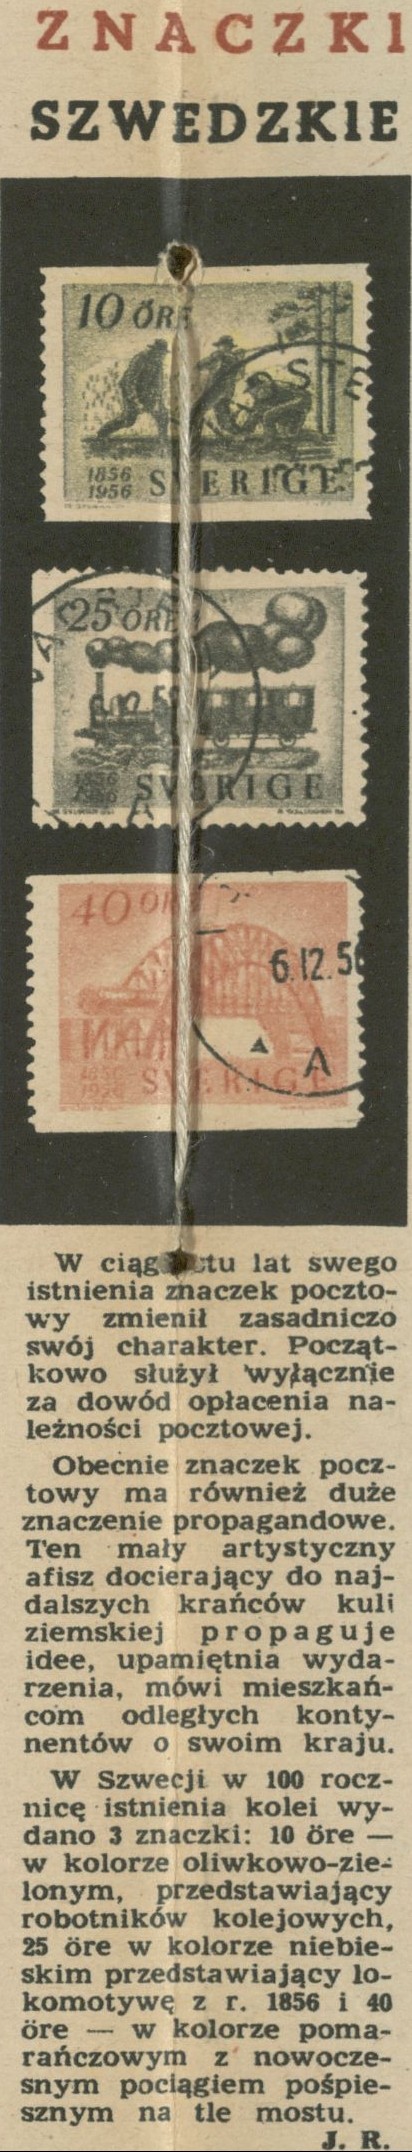 Znaczki szwedzkie